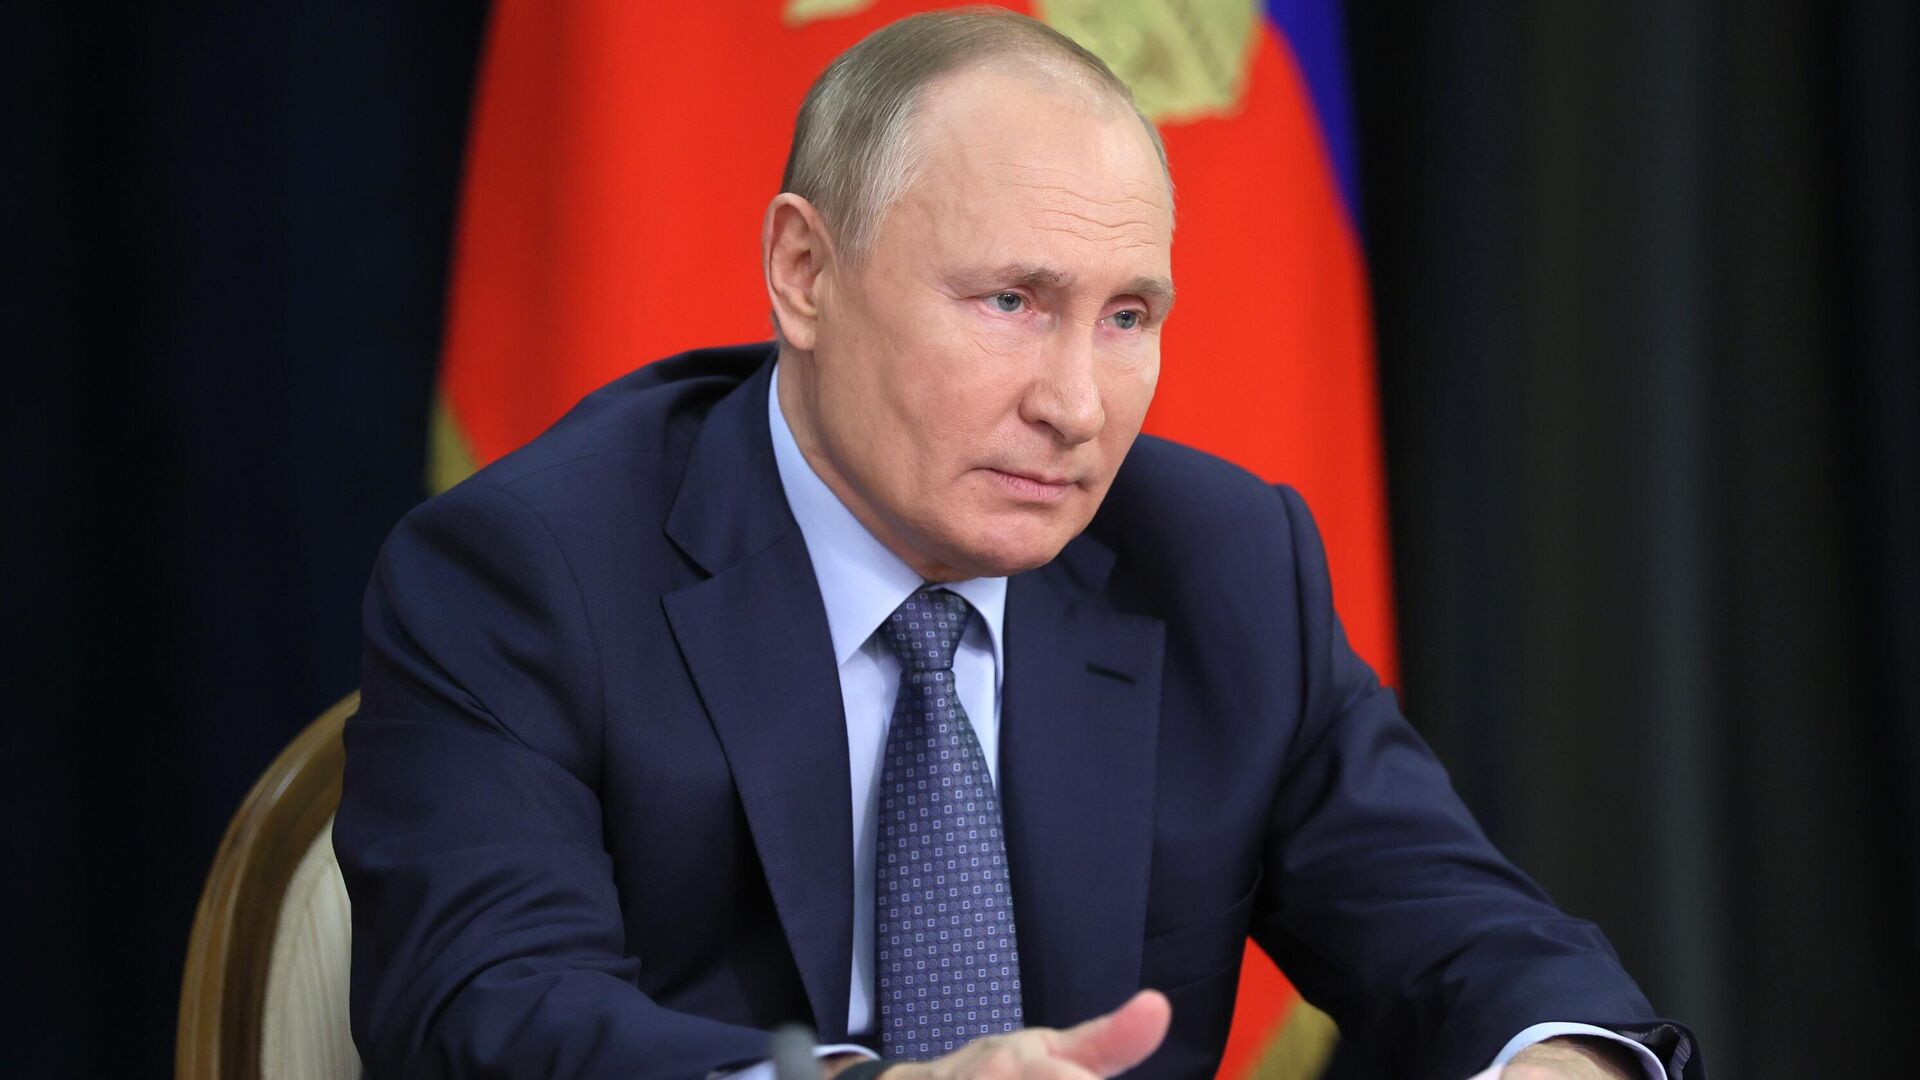 El presidente de Rusia, Vladímir Putin, durante una reunión sobre asuntos económicos, el 7 de diciembre de 2021 - Sputnik Mundo, 1920, 07.12.2021